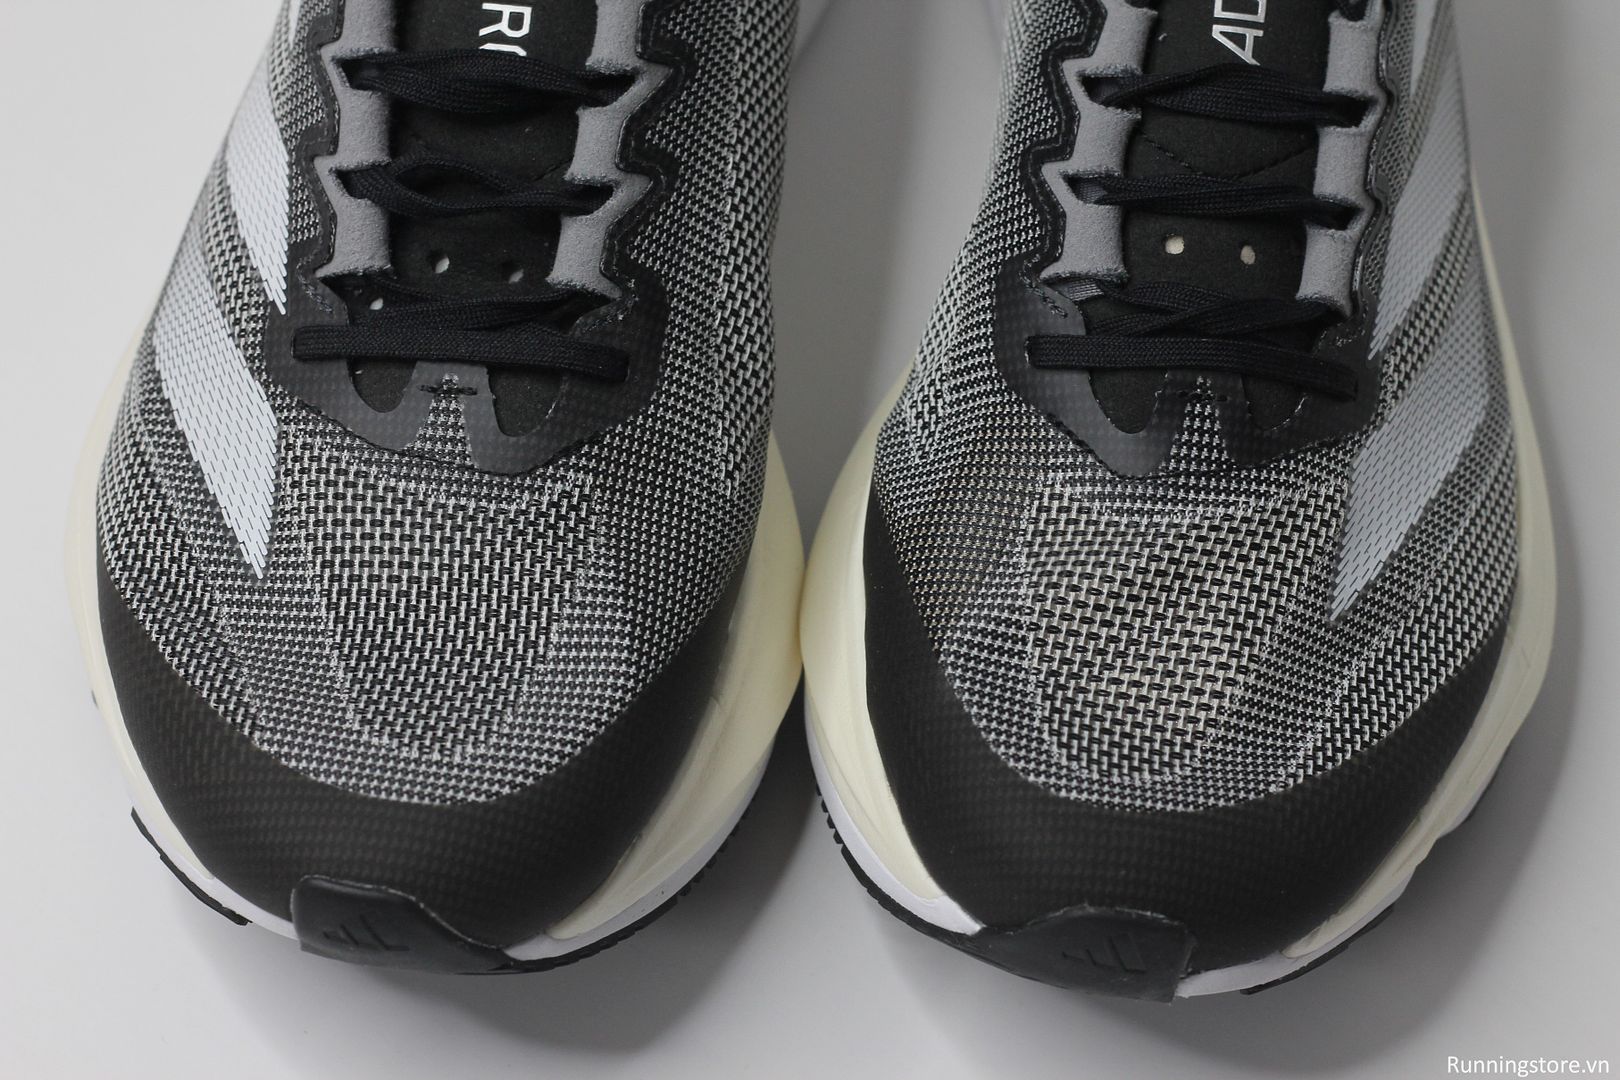 Giày chạy bộ Adidas Boston 12 màu xám trắng ID4234